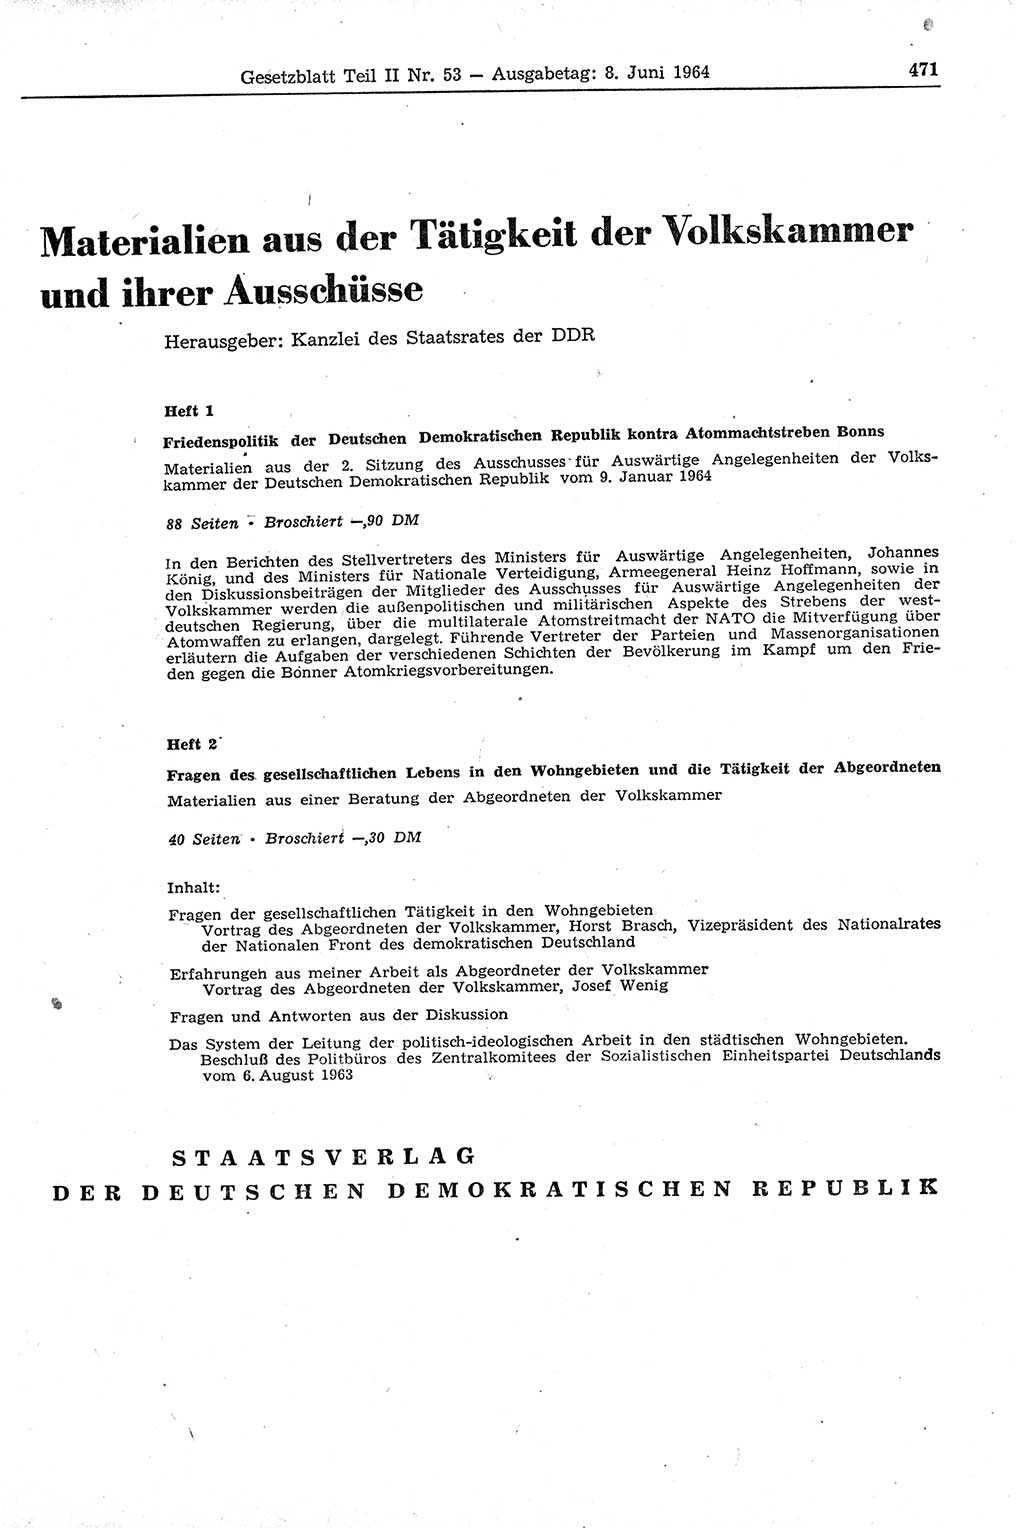 Gesetzblatt (GBl.) der Deutschen Demokratischen Republik (DDR) Teil ⅠⅠ 1964, Seite 471 (GBl. DDR ⅠⅠ 1964, S. 471)